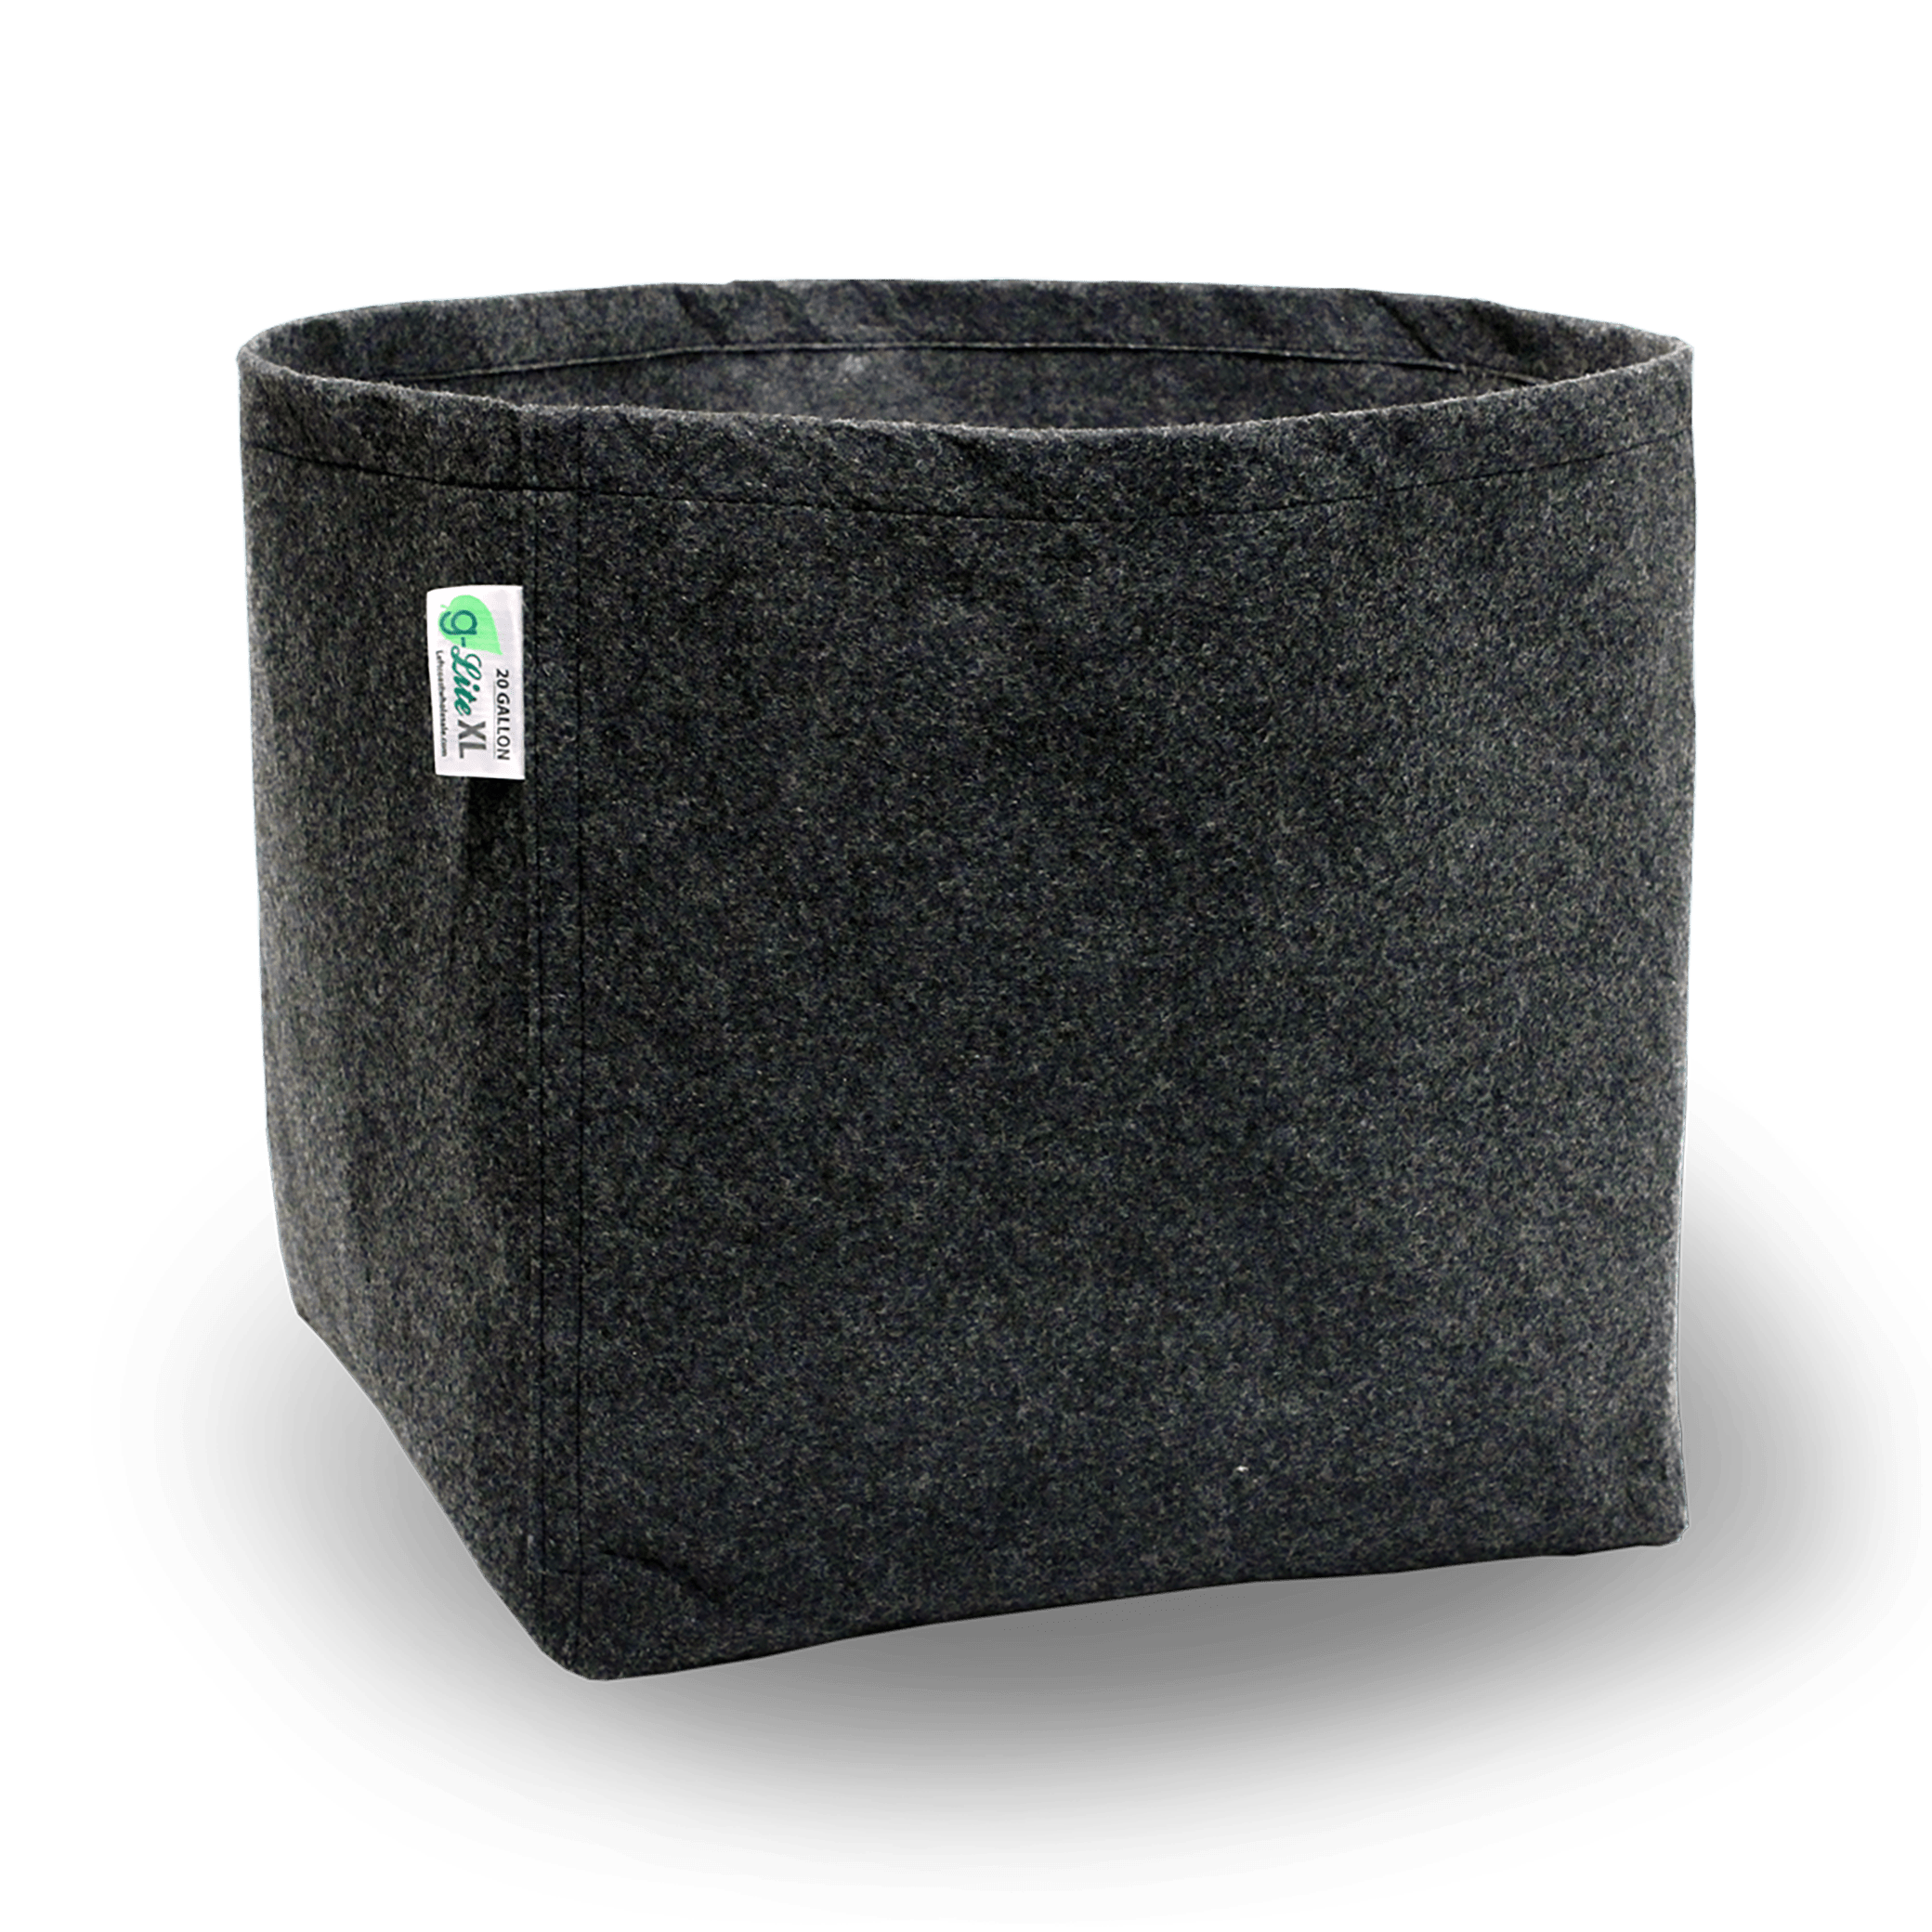 G-Lite XL Fabric Pot